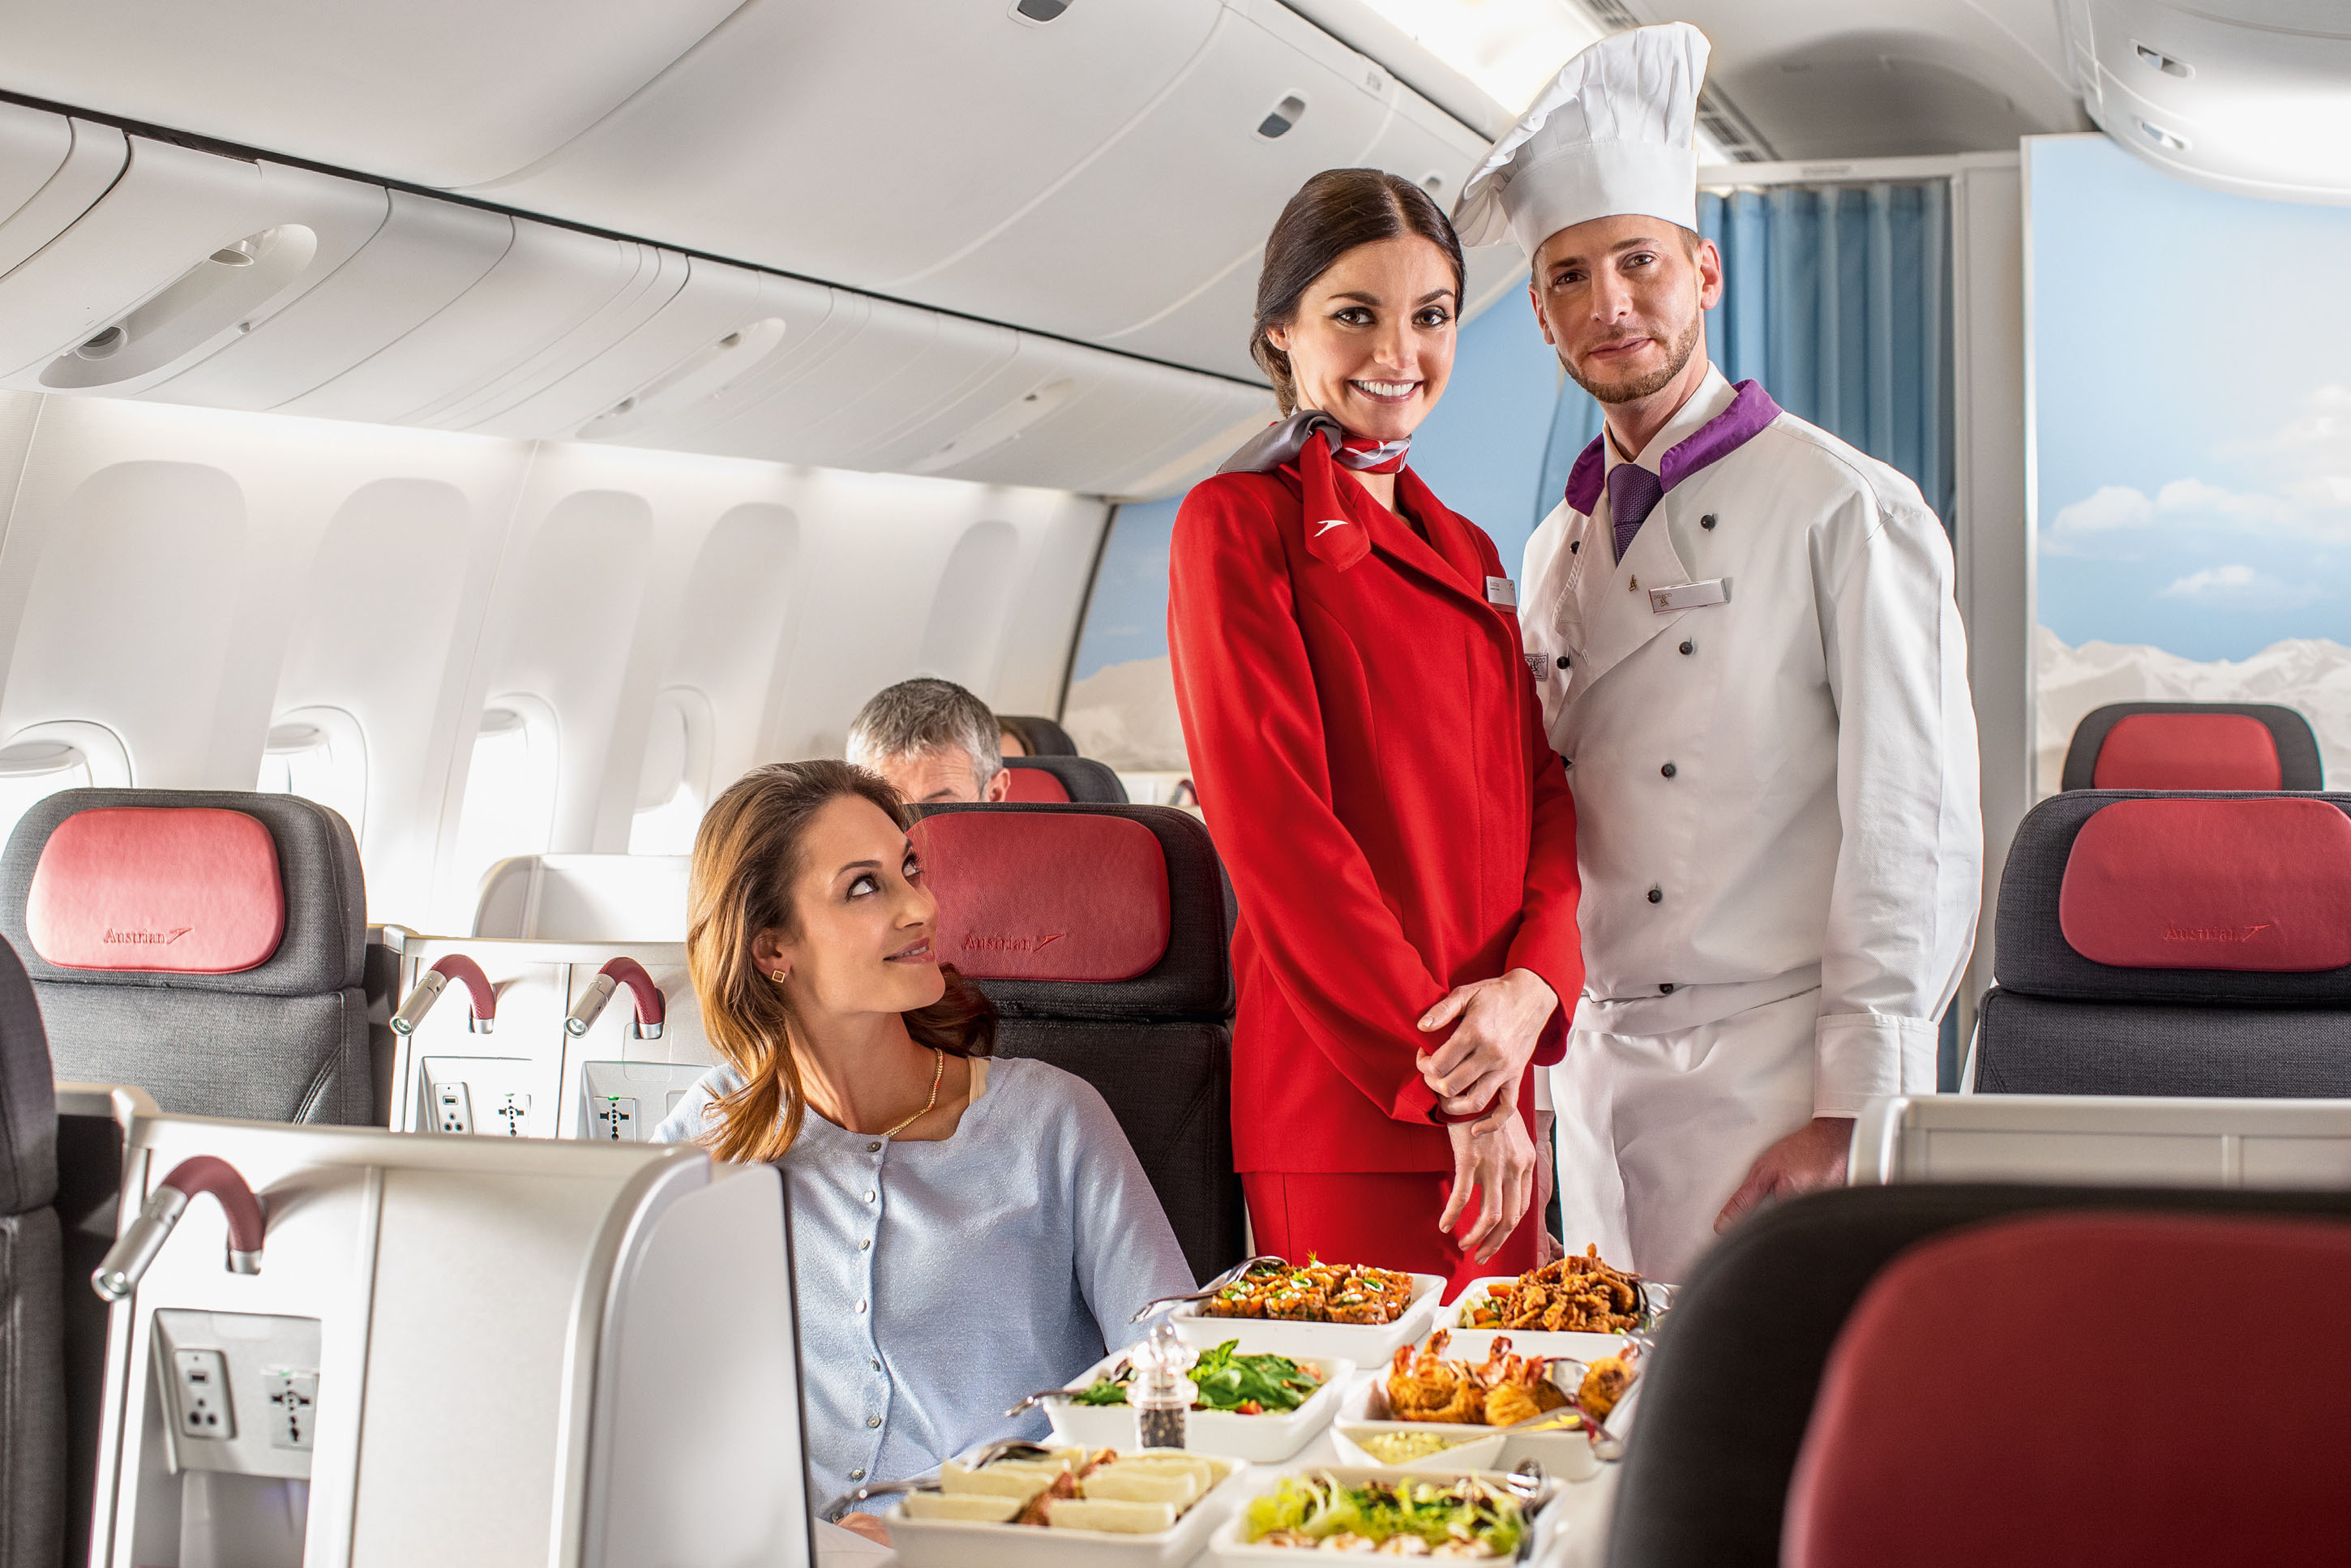 Airline business. Еда в самолете. Стюардесса с едой. Еда на борту. Борт самолета.